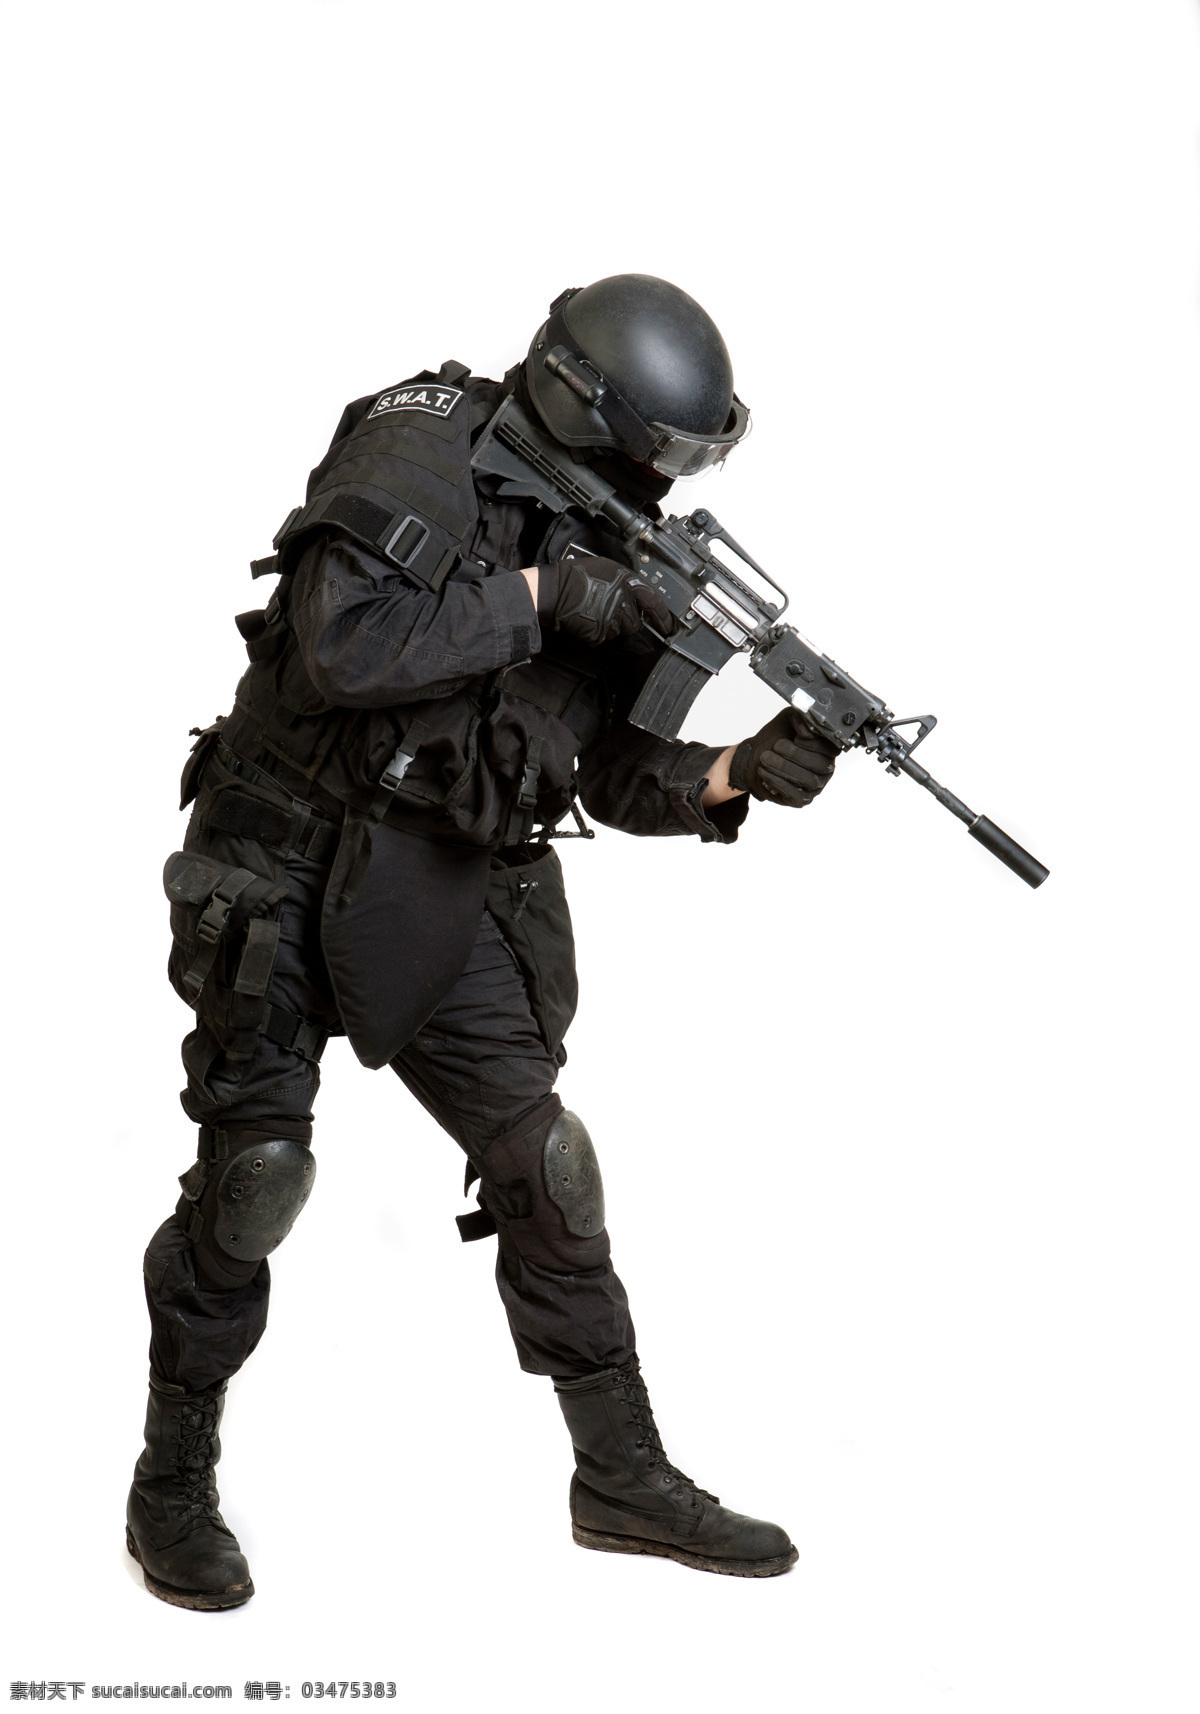 手 冲锋枪 武警 警察 士兵 特种部队 军事武器 武器装备 武装 现代科技